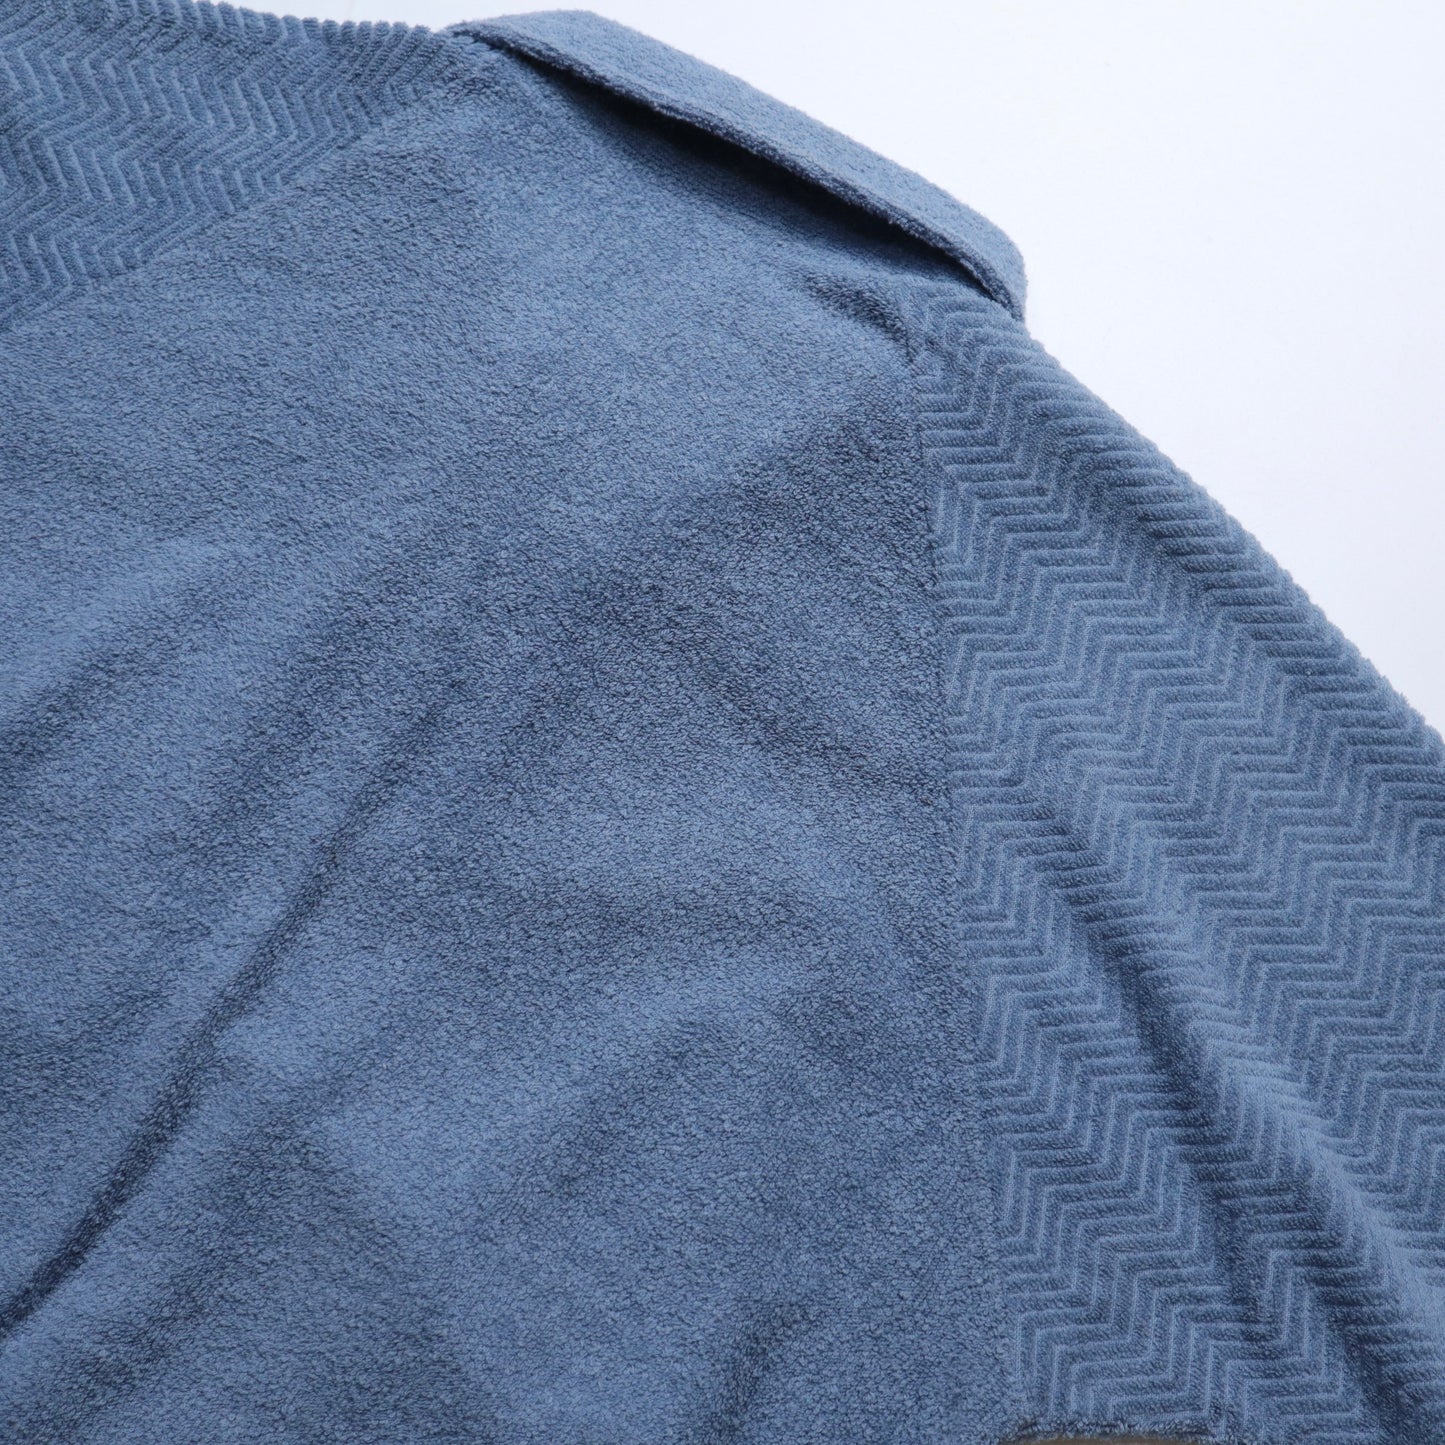 70s Campus 美國製 土耳其藍毛巾布大口袋上衣